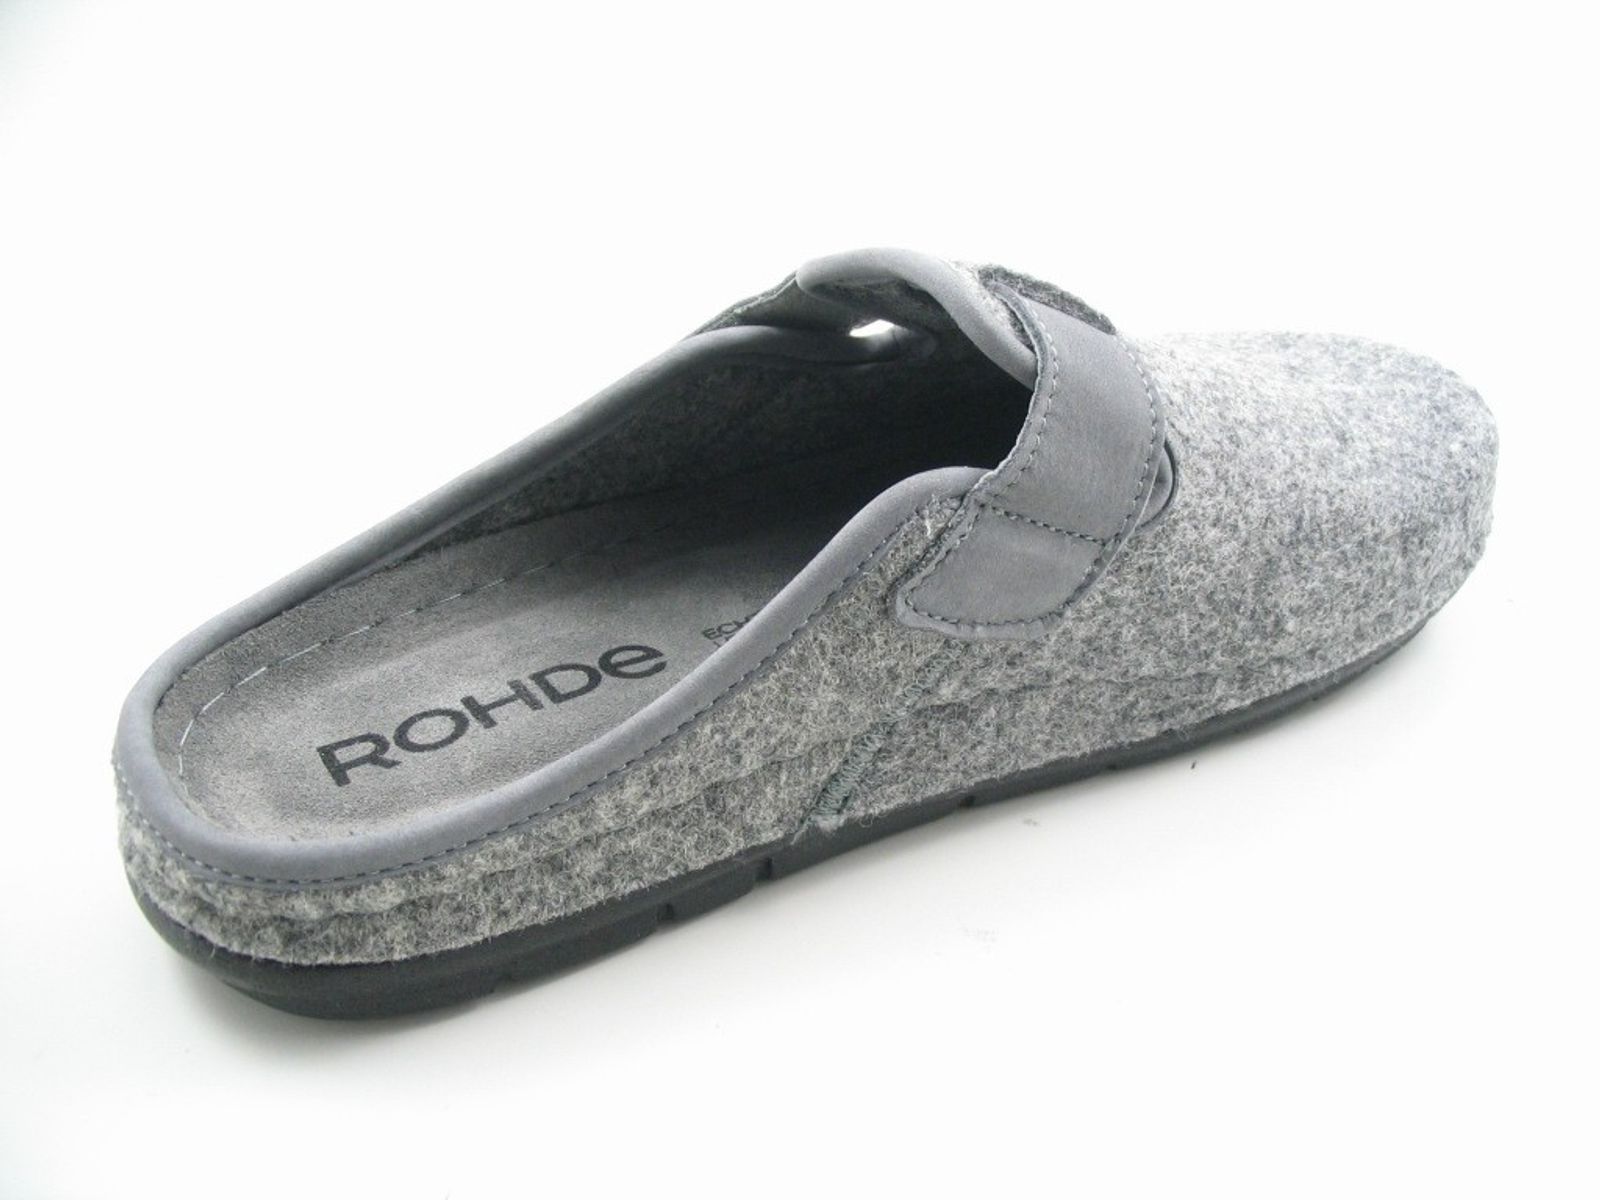 Schuh von Rohde, 45